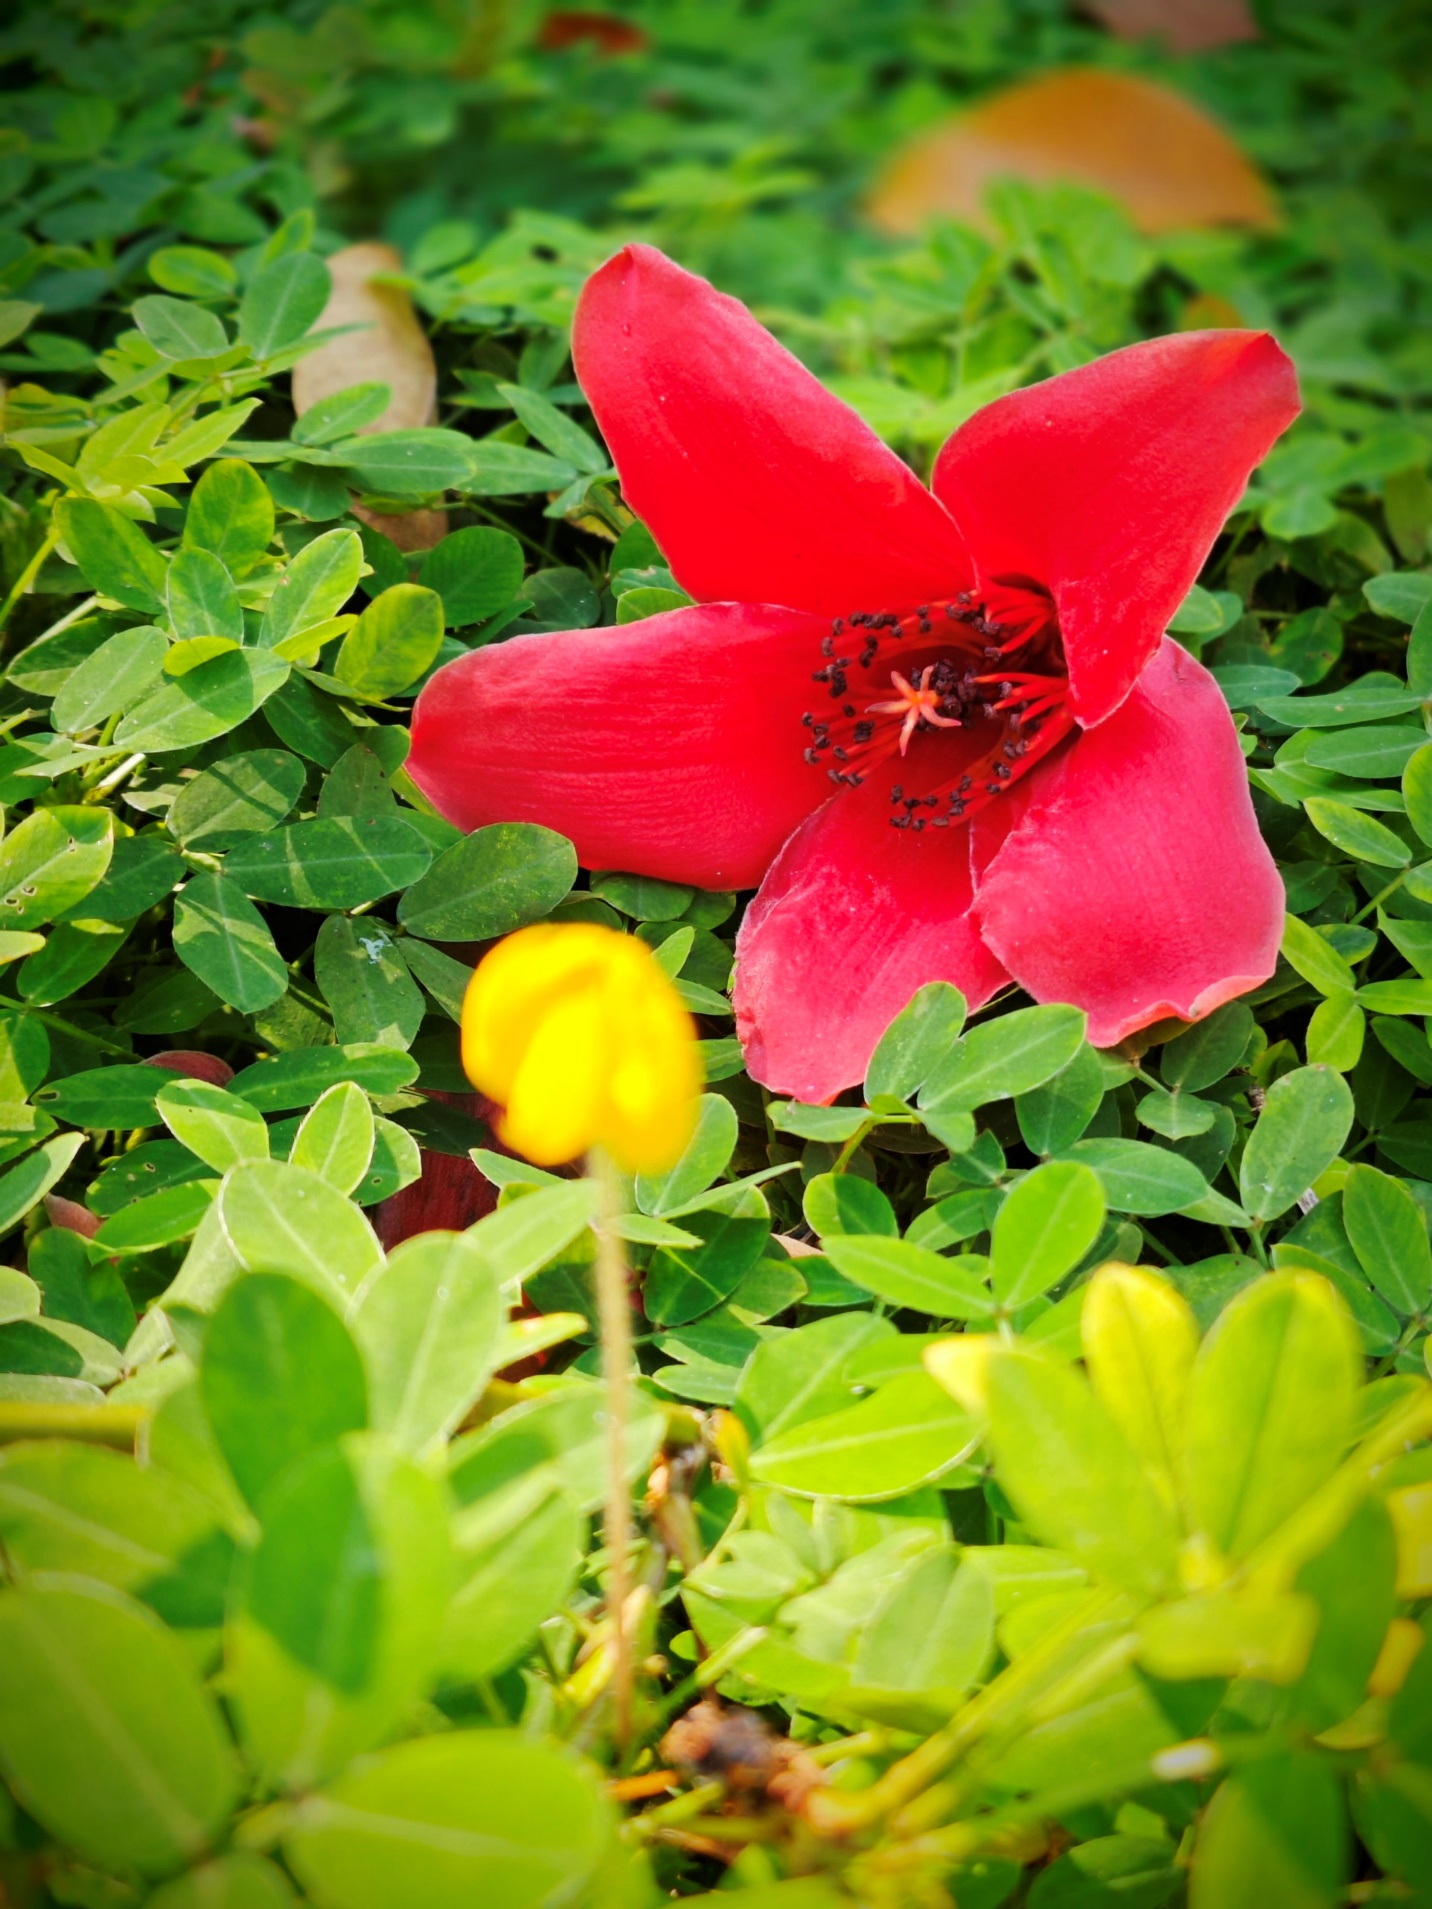 Hoa gạo bung nở đỏ rực trên đất trời xứ Huế - 8